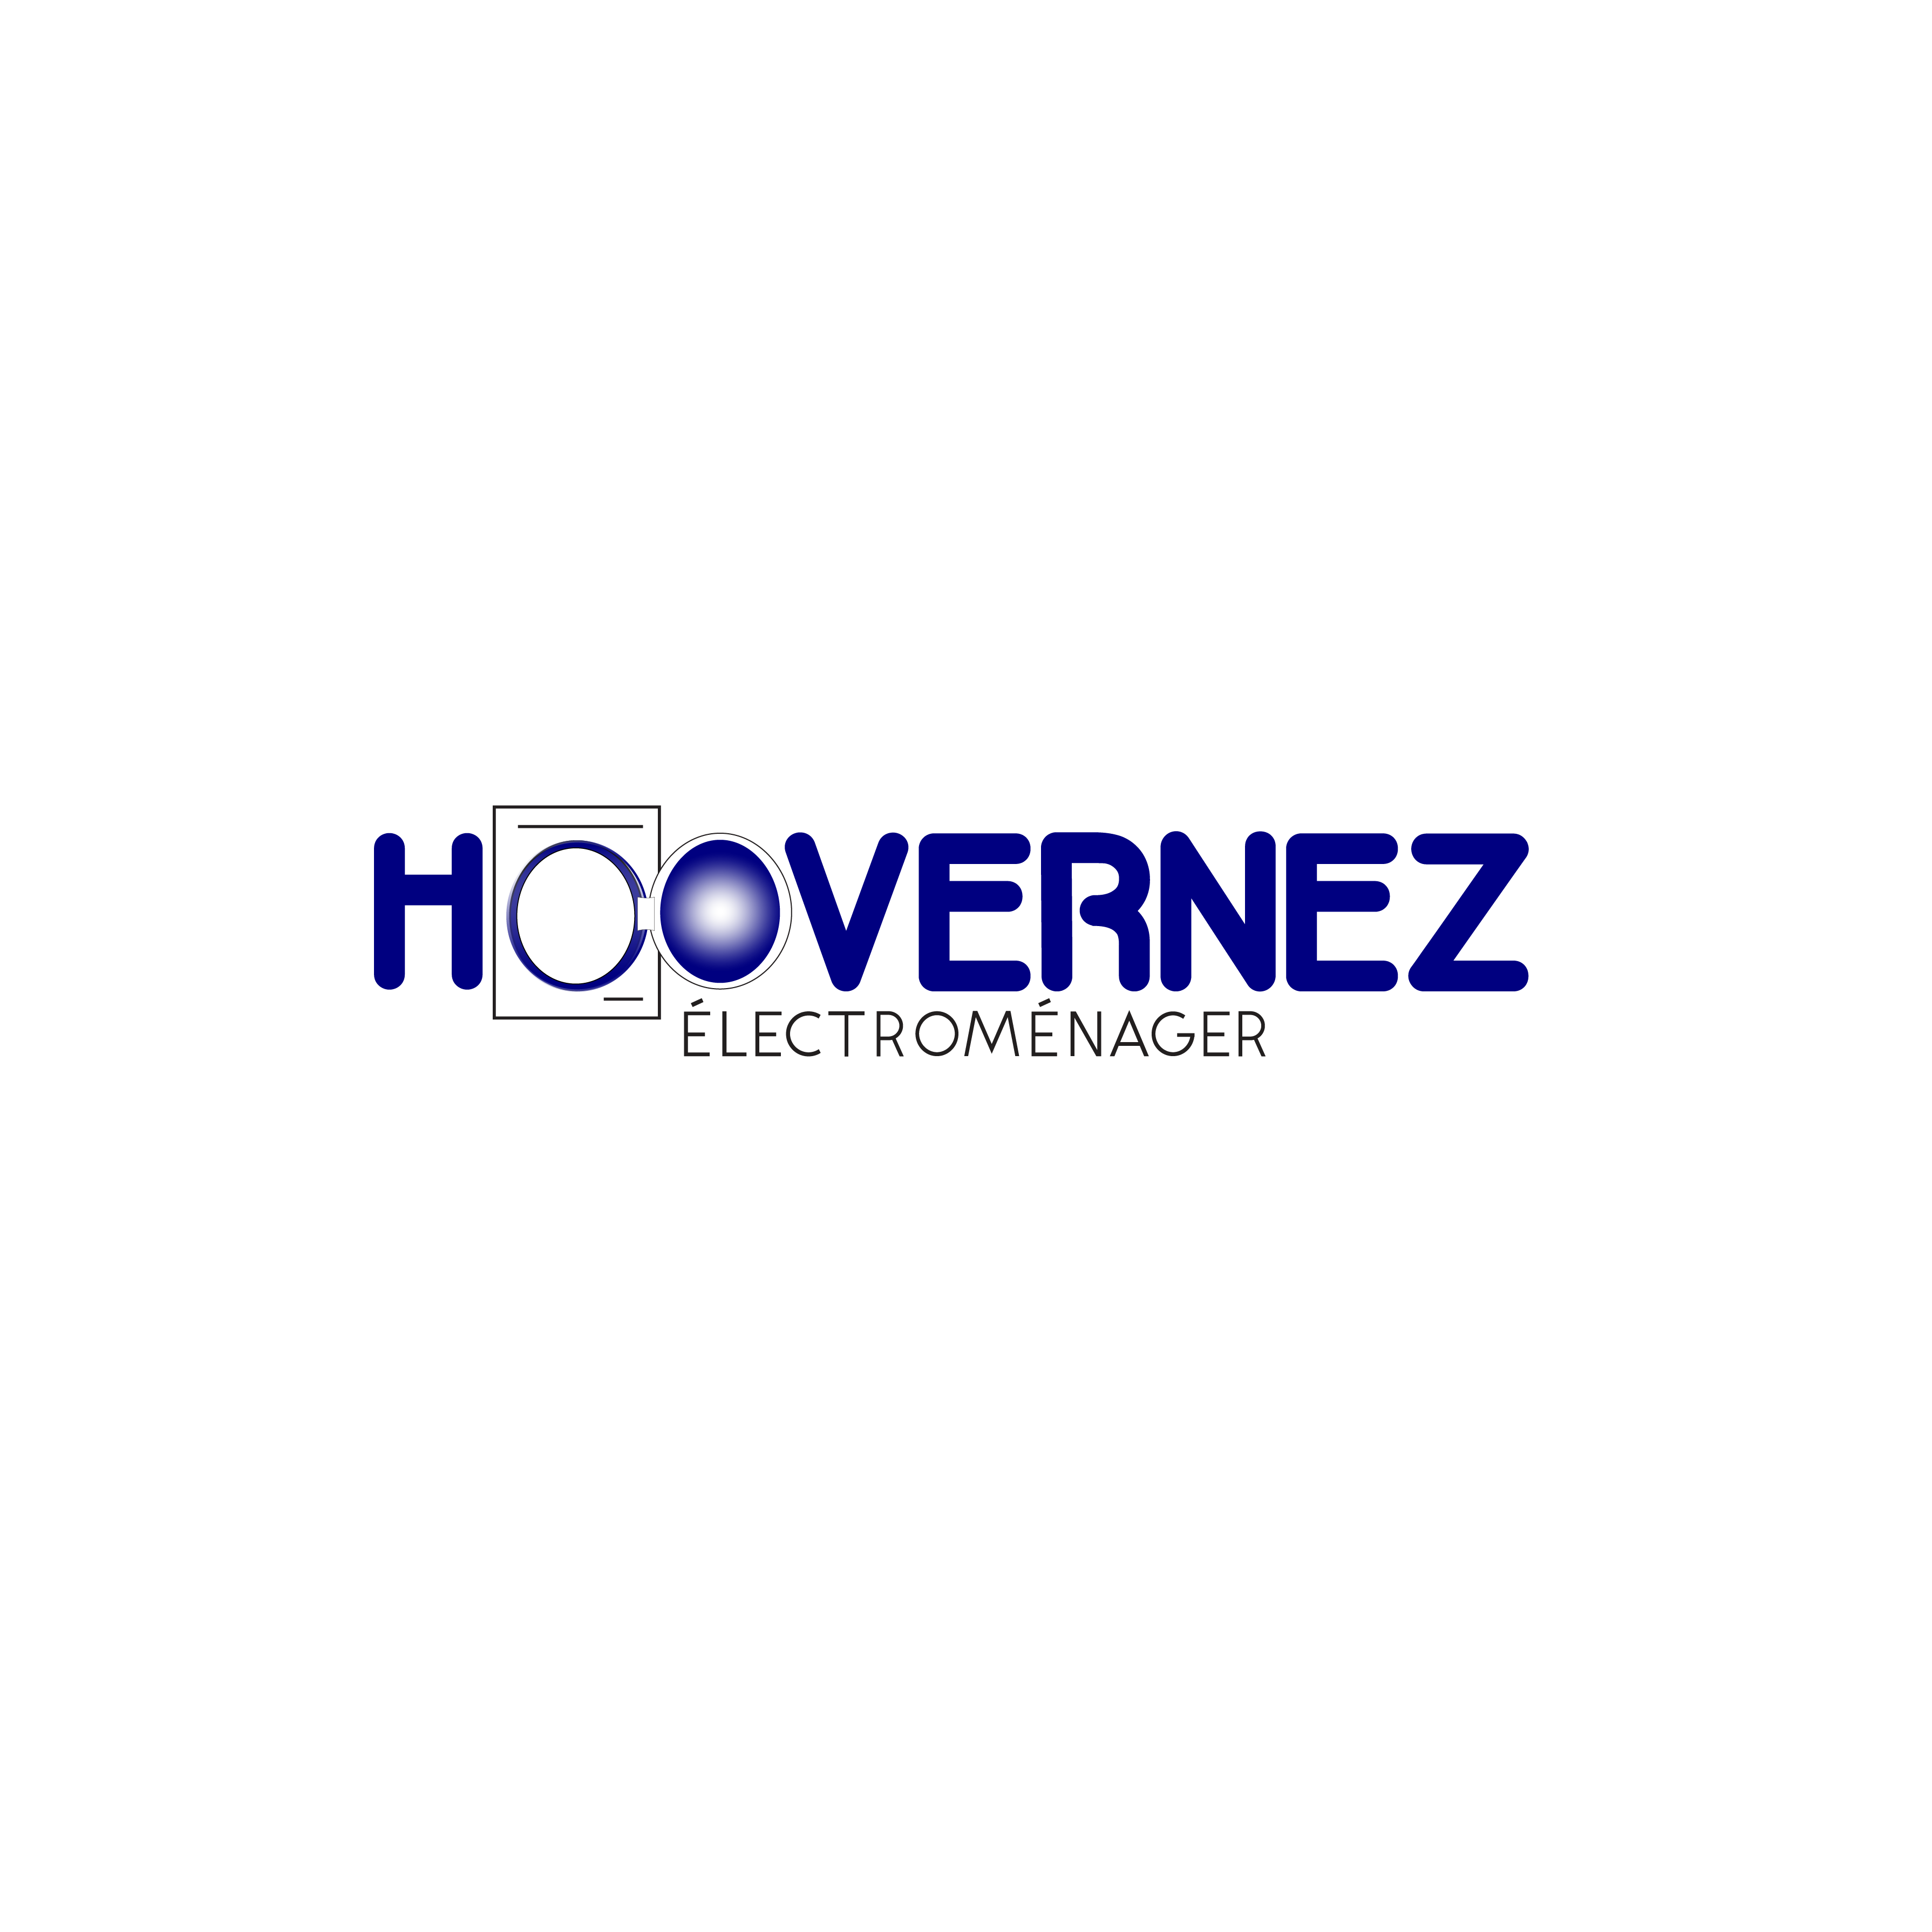 Hoovernez SARL Logo